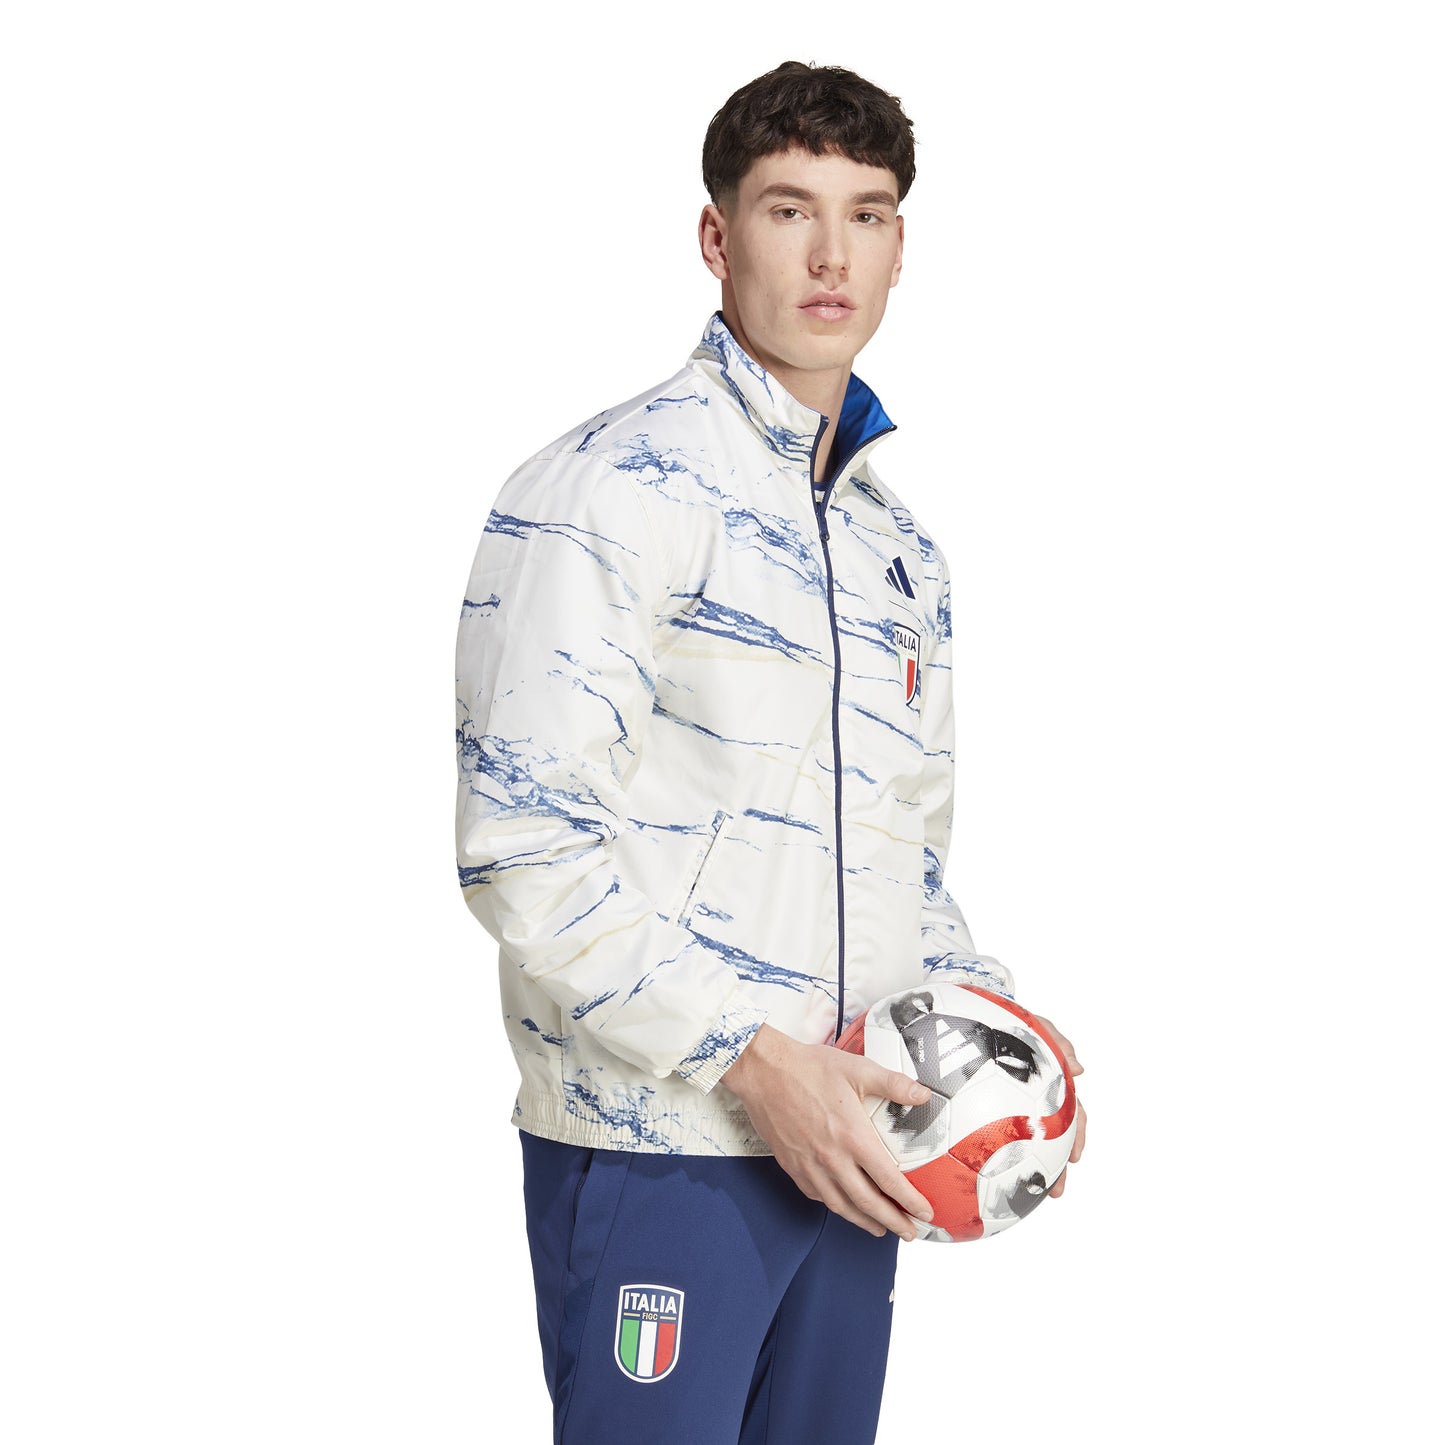 Adidas Italy Anthem Jacket